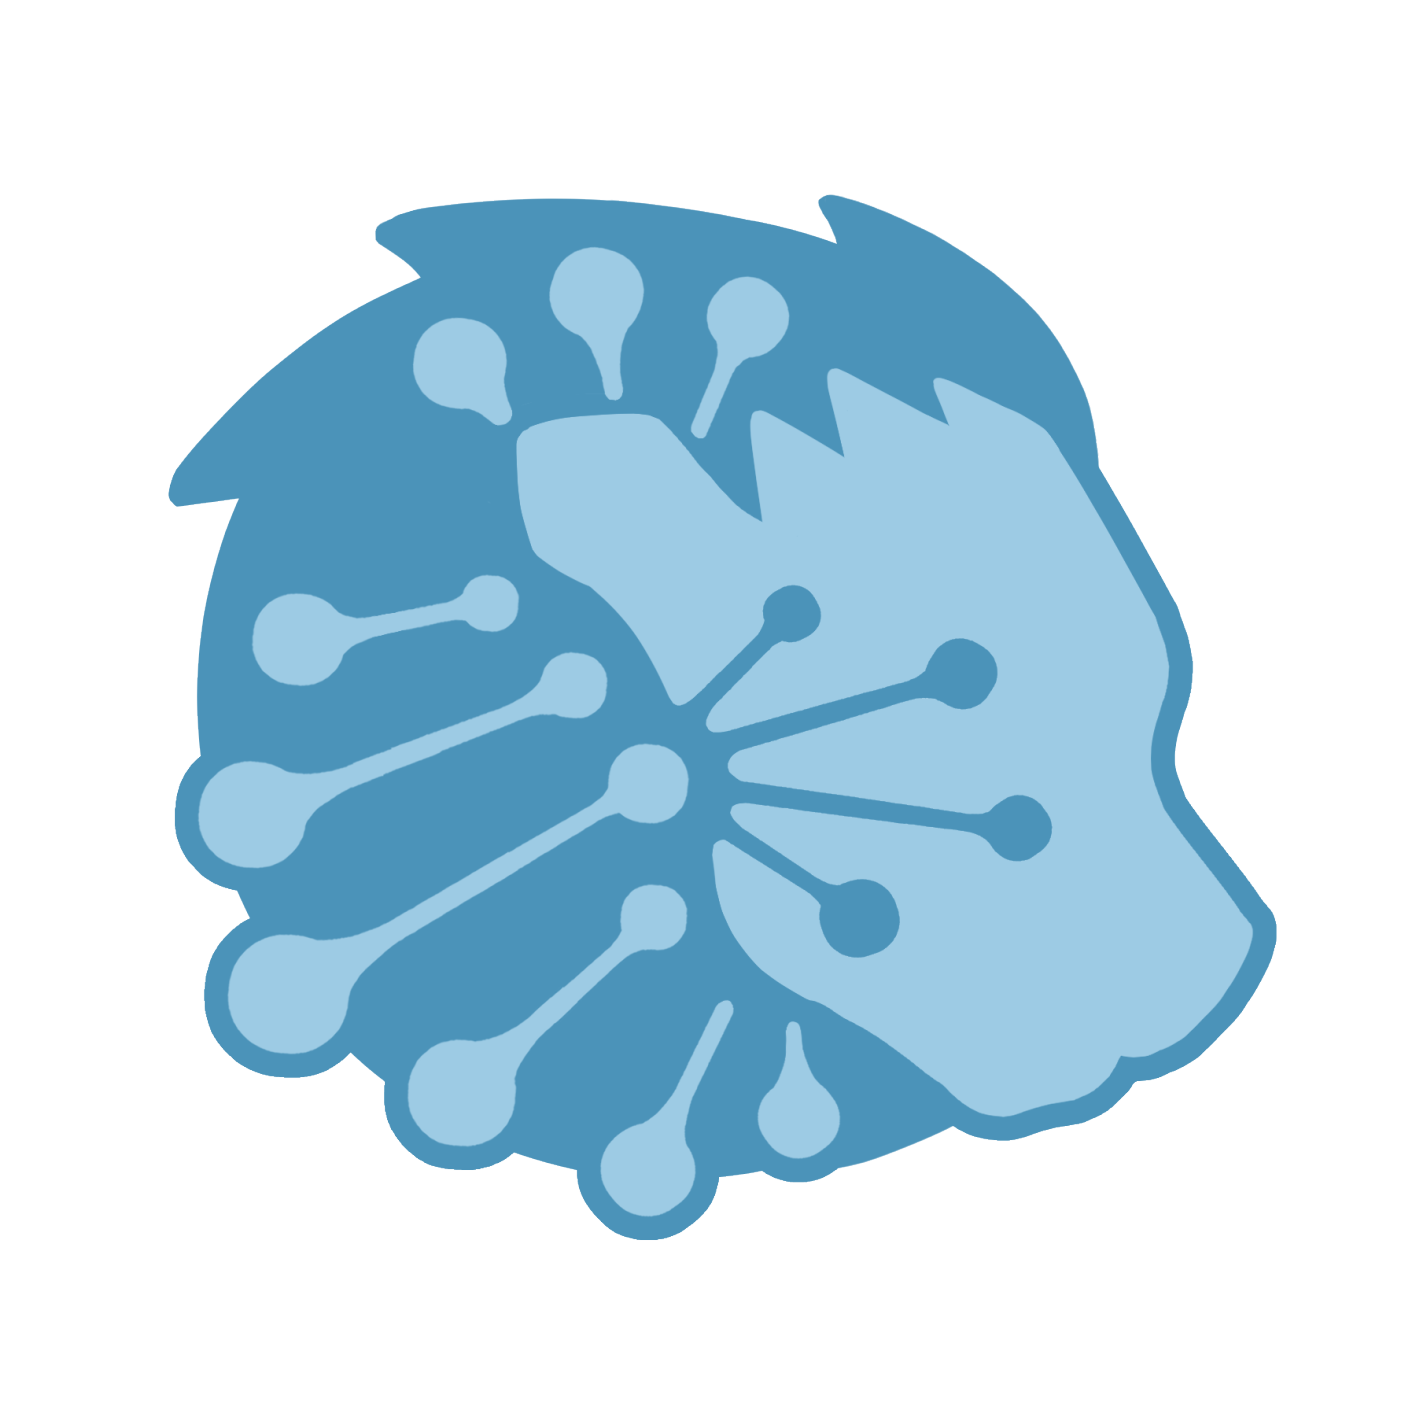 Biology Club logo